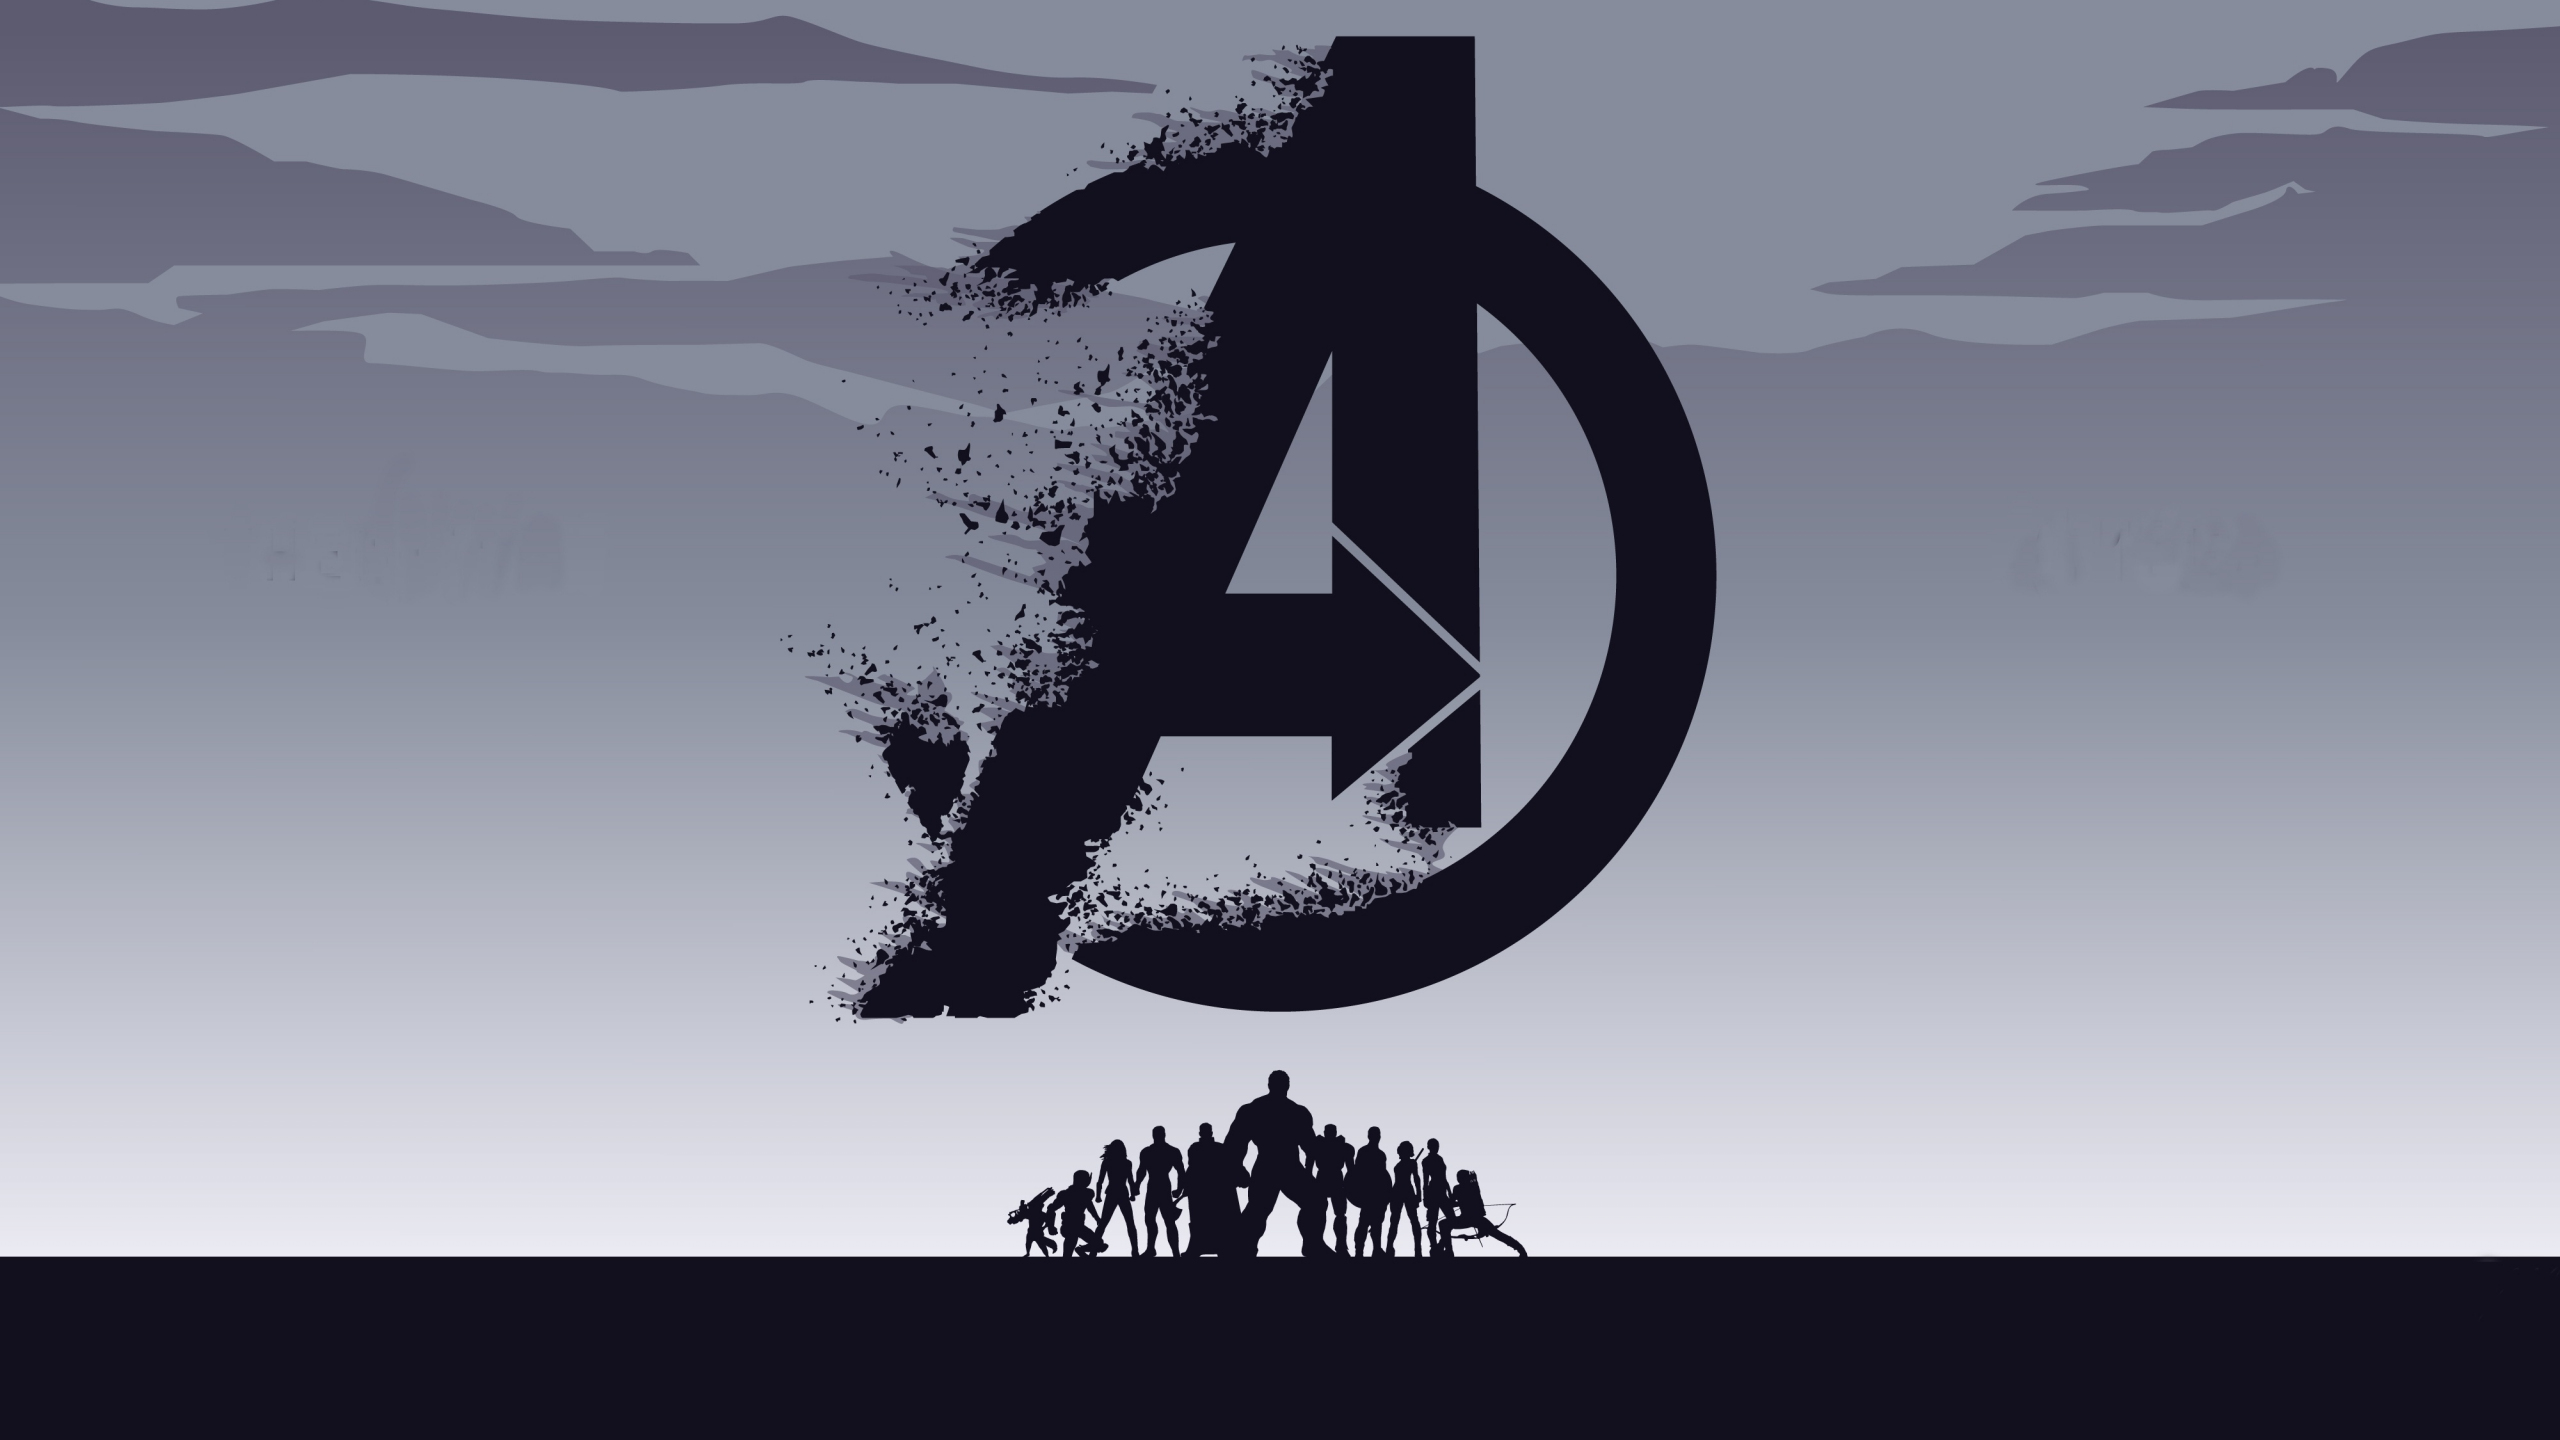 2019 movie, Avengers: Endgame, minimal, silhouette, art, 2560x1440 wallpaper